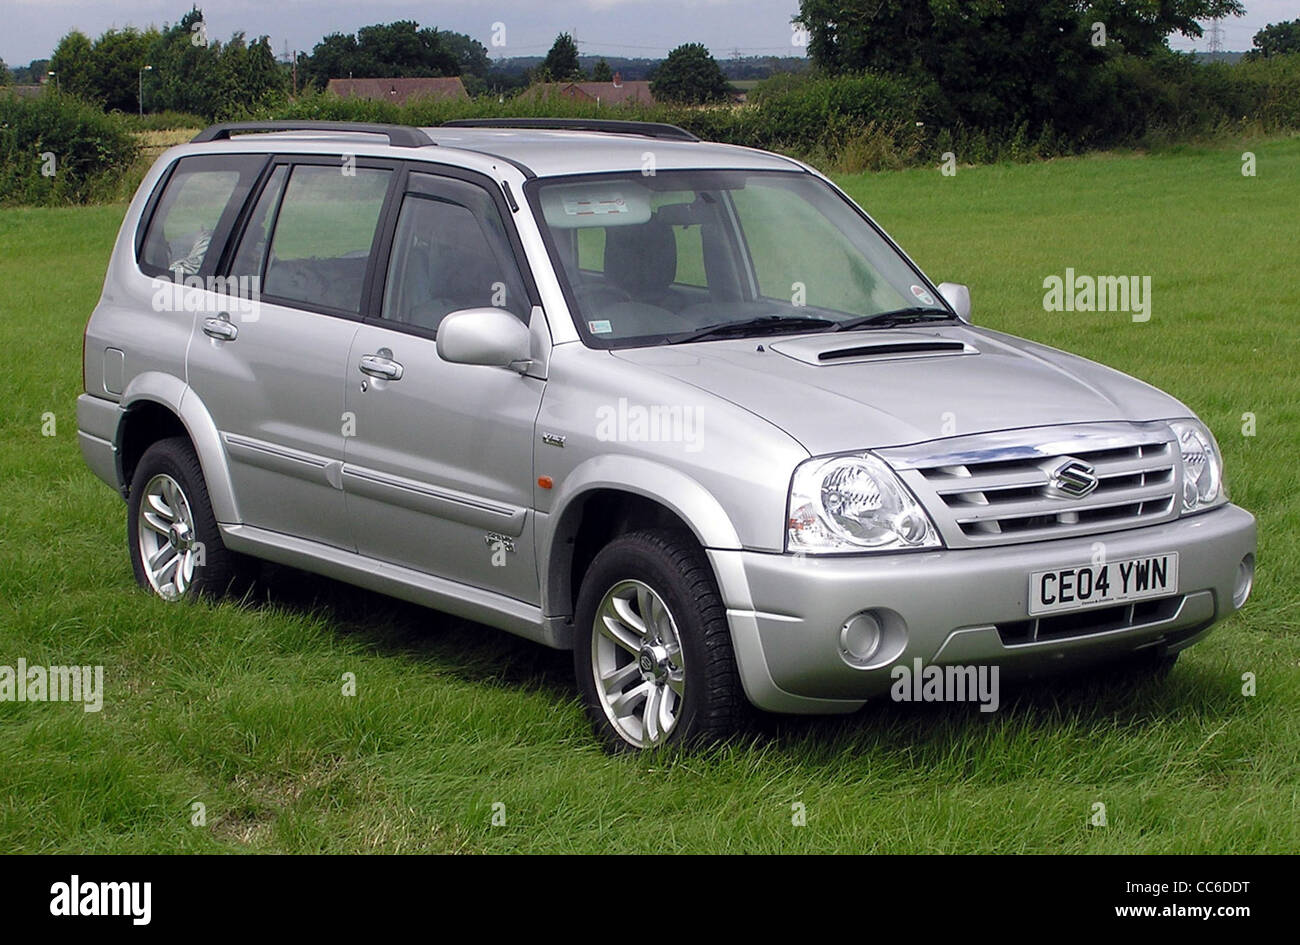 2004 Suzuki Grand Vitara 2.0td at Coalpit Heath Car Show, near Bristol, England. Stock Photo